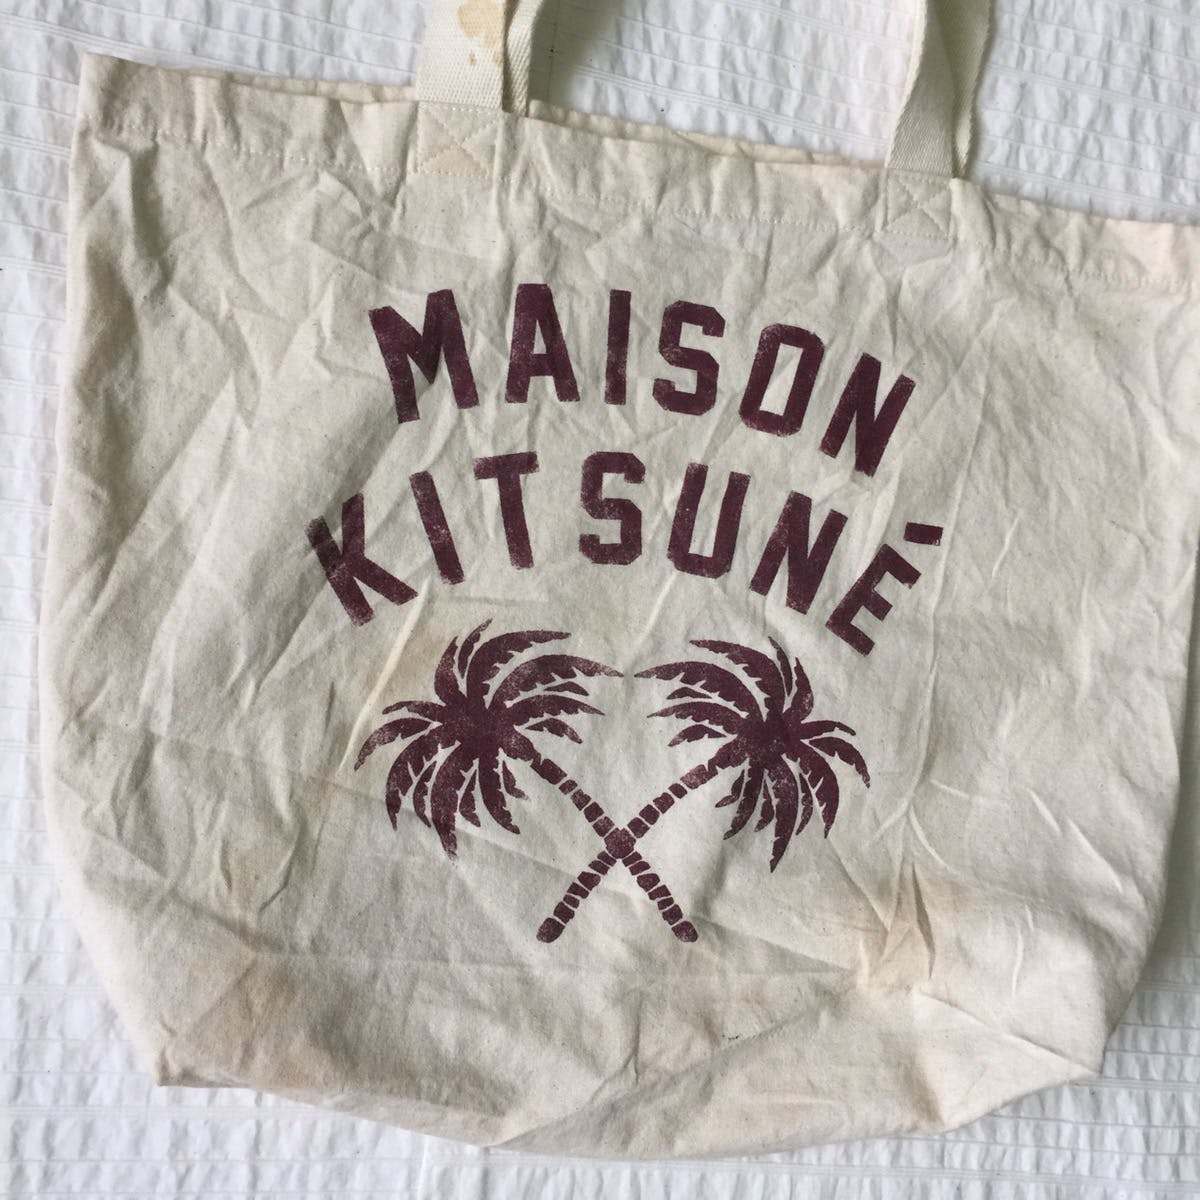 Maison kitsune tote bag - 3